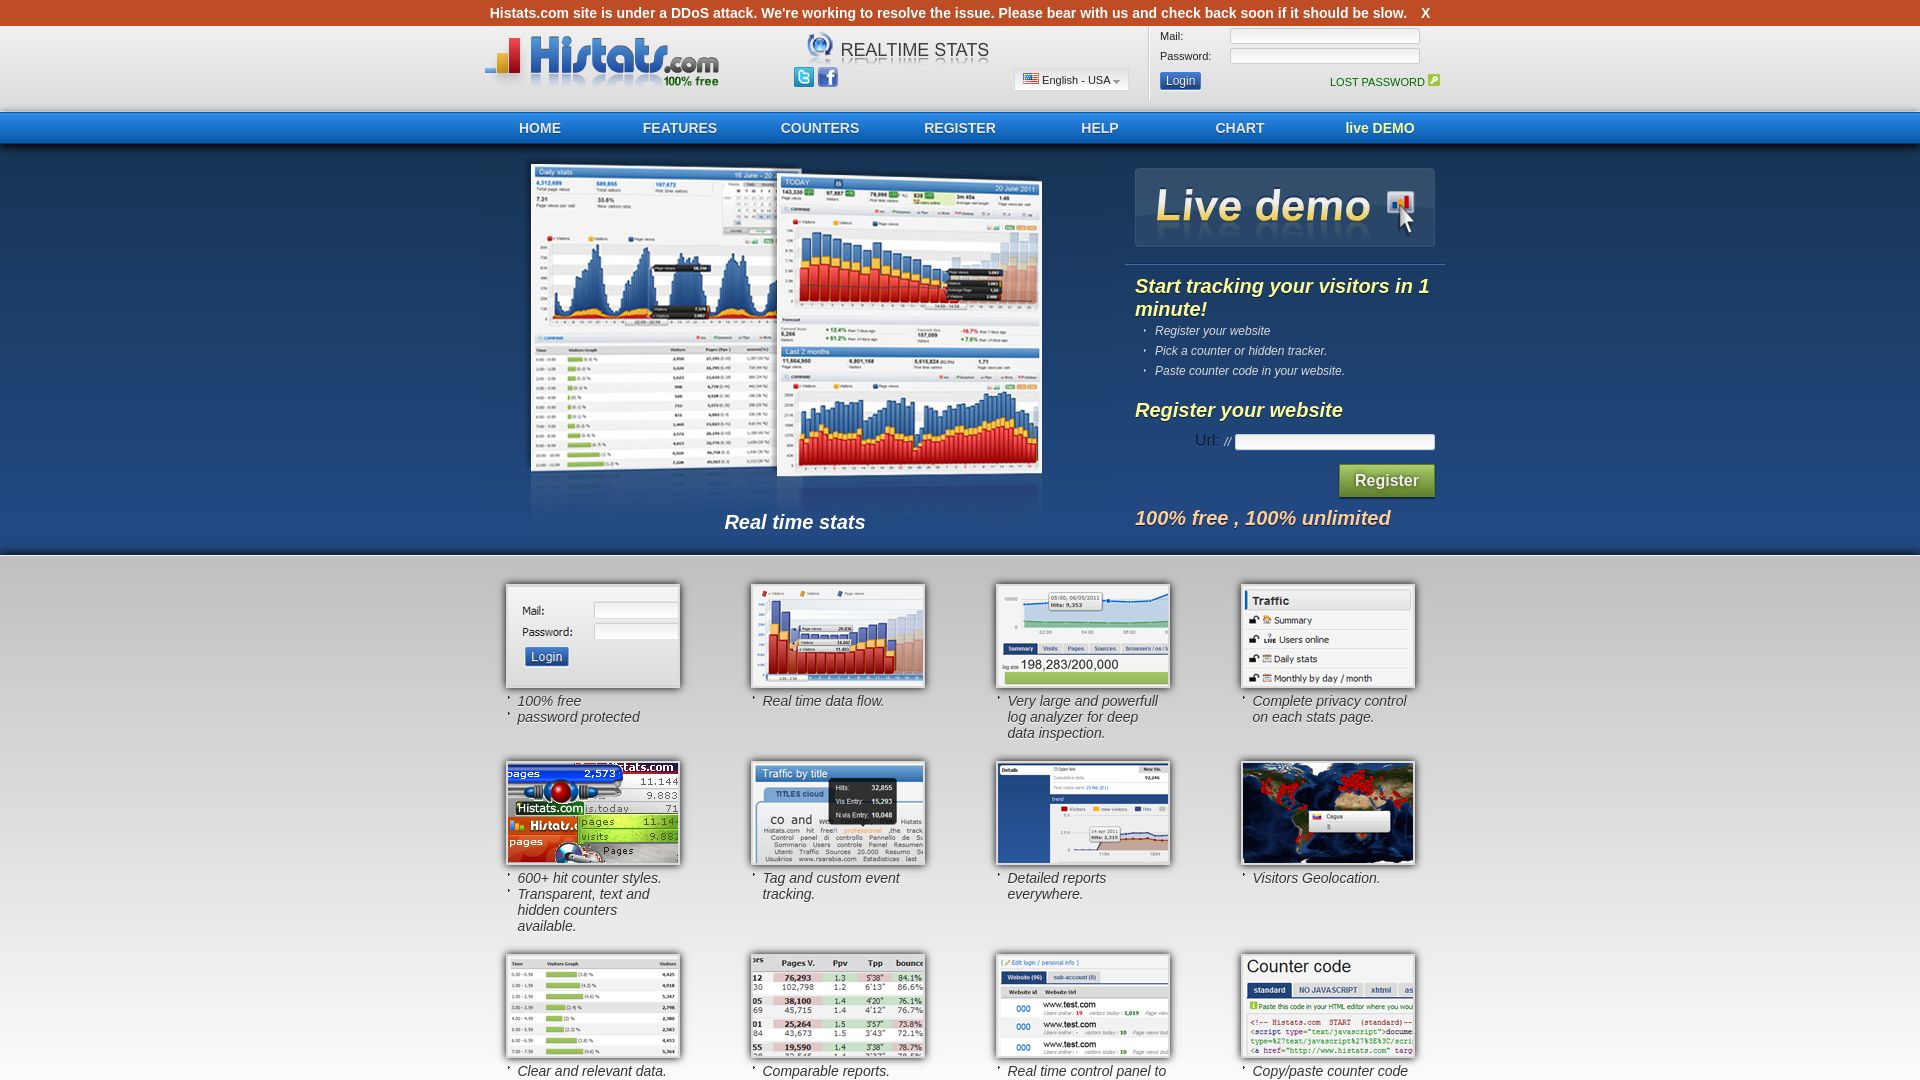 Status do site histats.com está   ONLINE